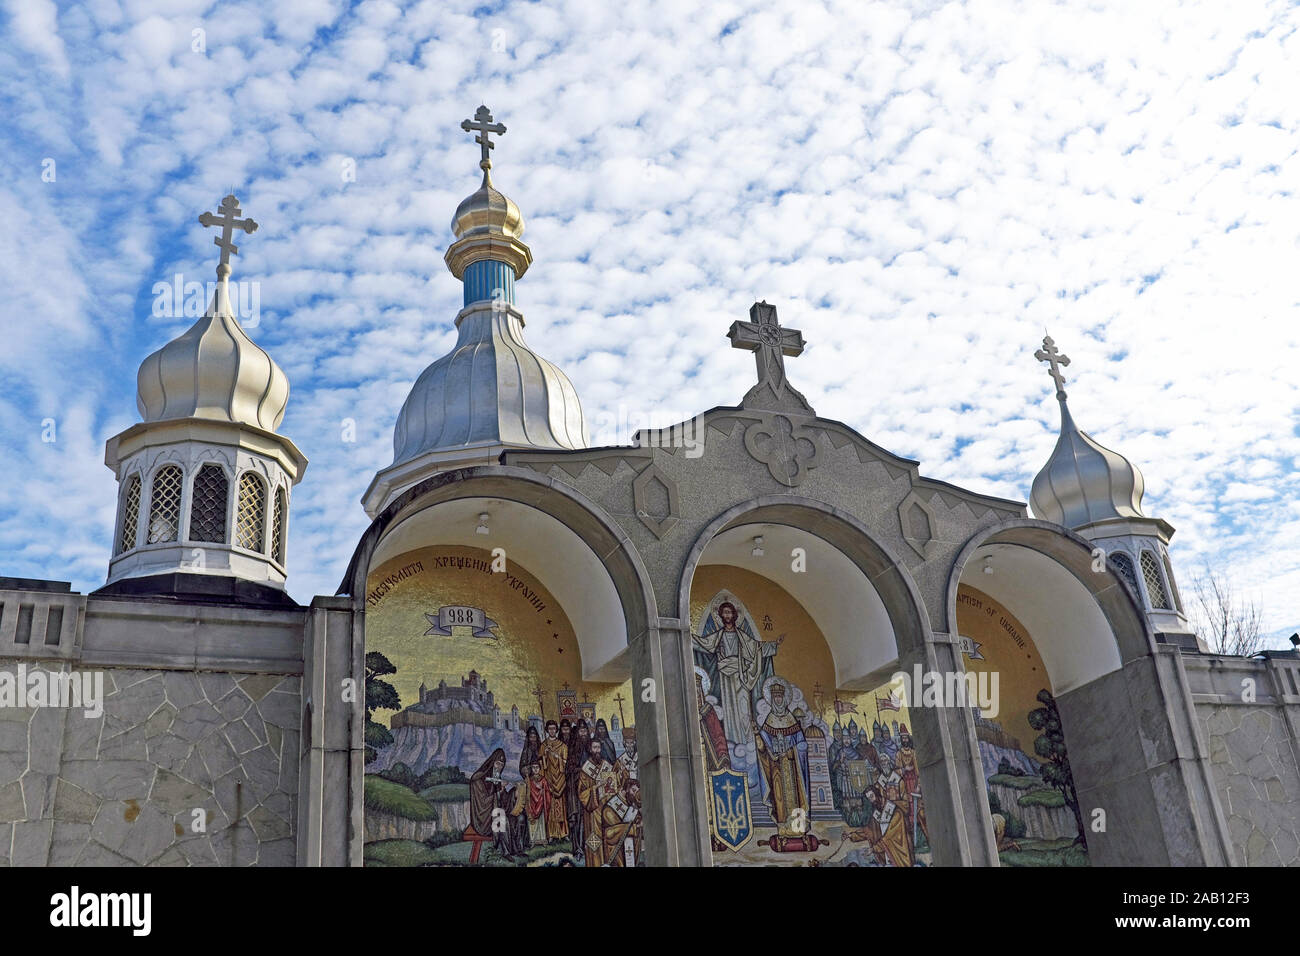 St. Vladimir Cathédrale orthodoxe ukrainienne sur State Rd. À Parma, Ohio a ouvert en 1966 et a été consacré en 1967. Banque D'Images